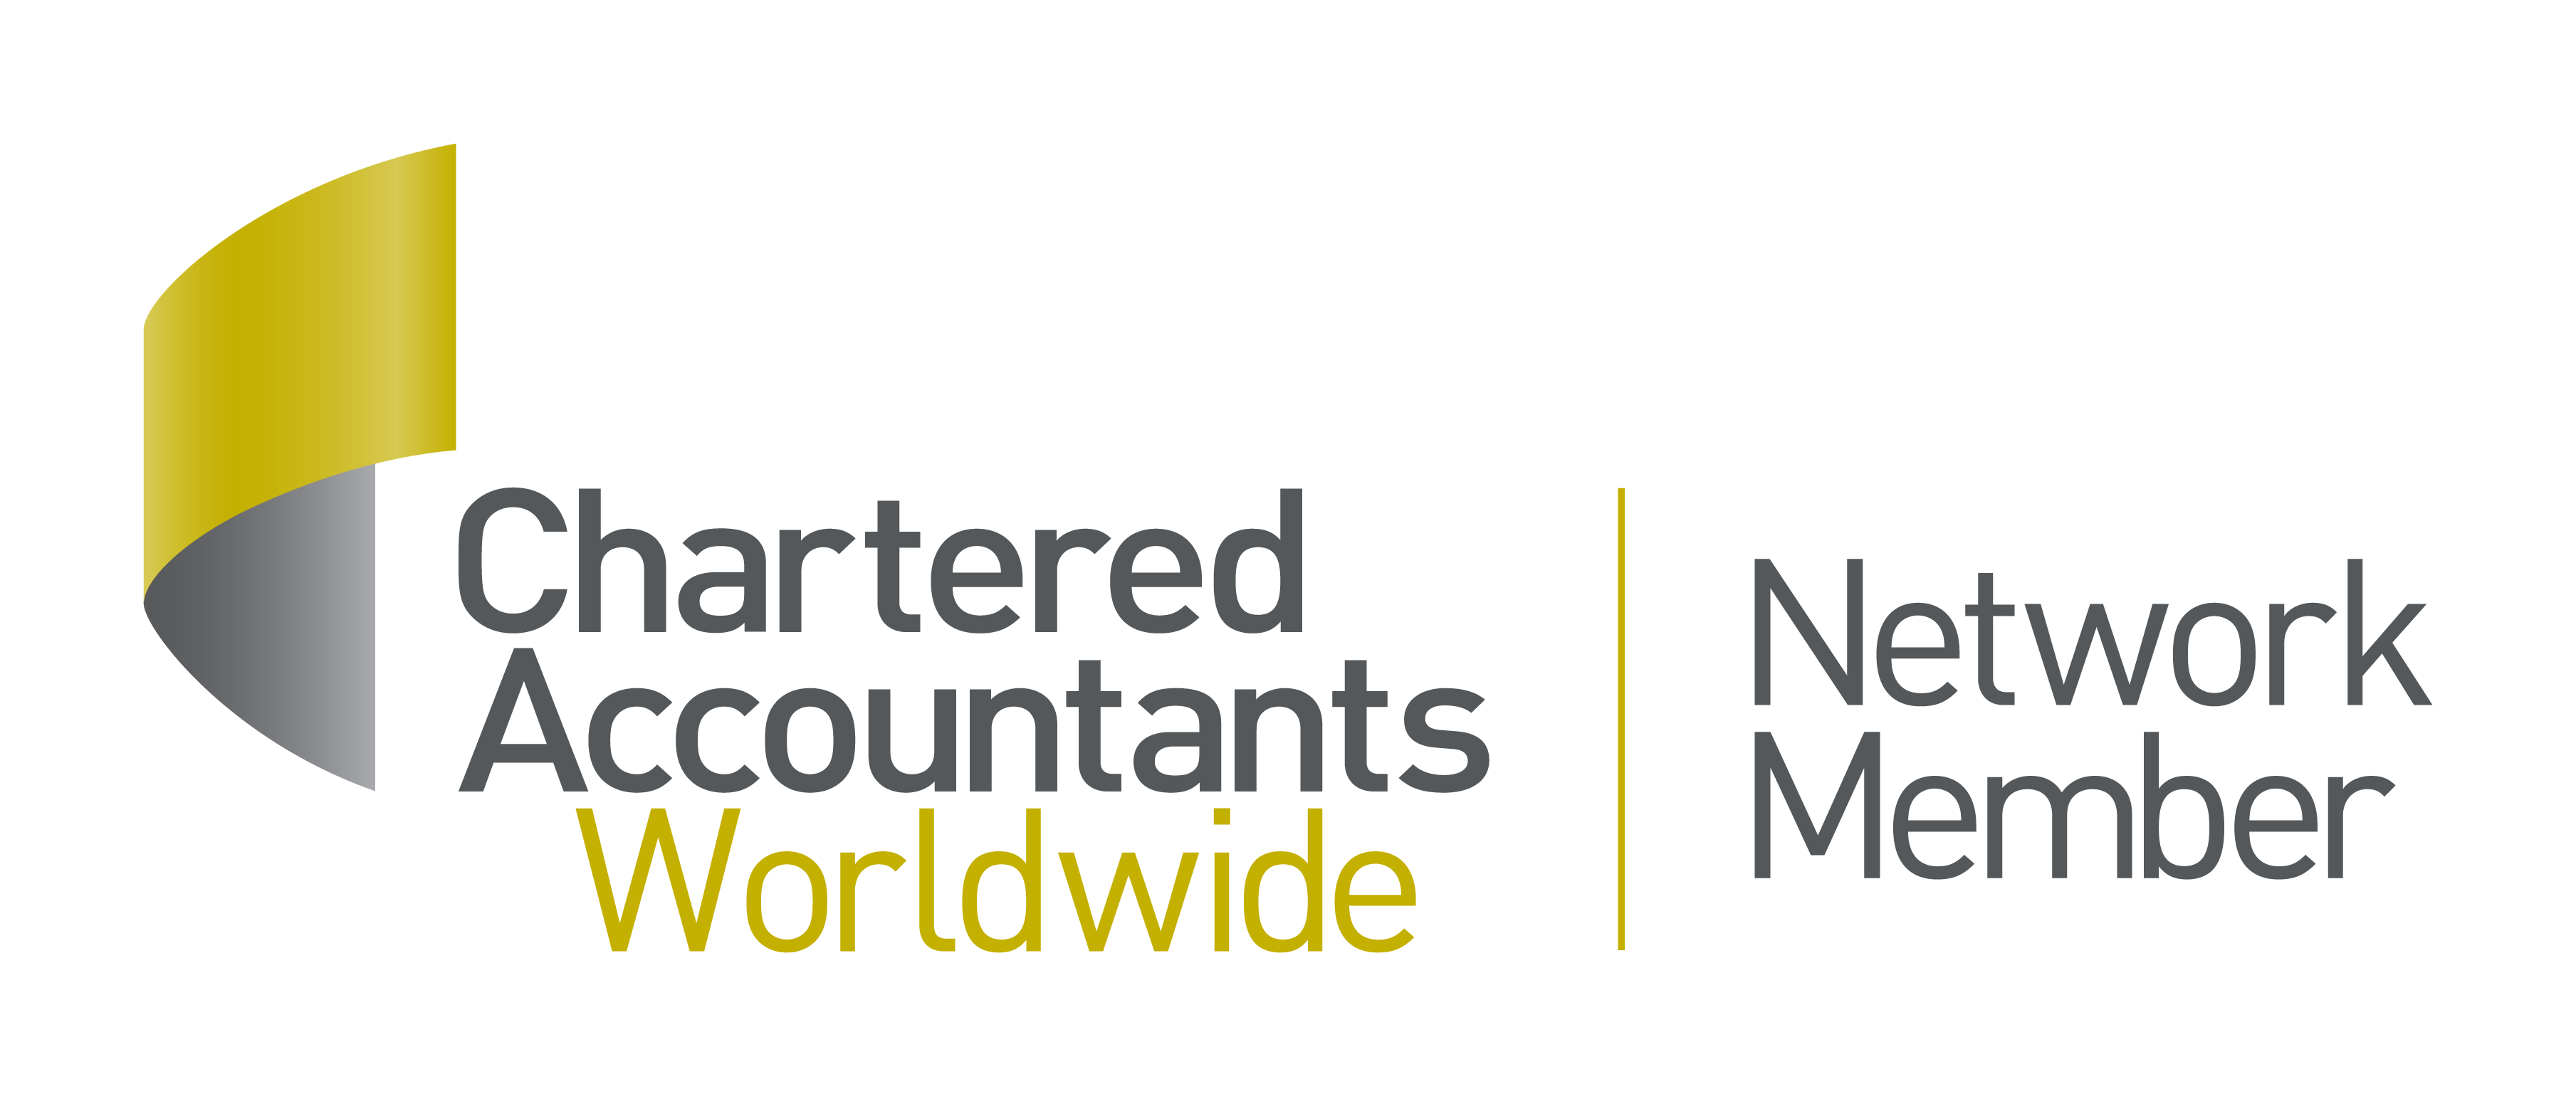 Chartered Accountants Wordwide